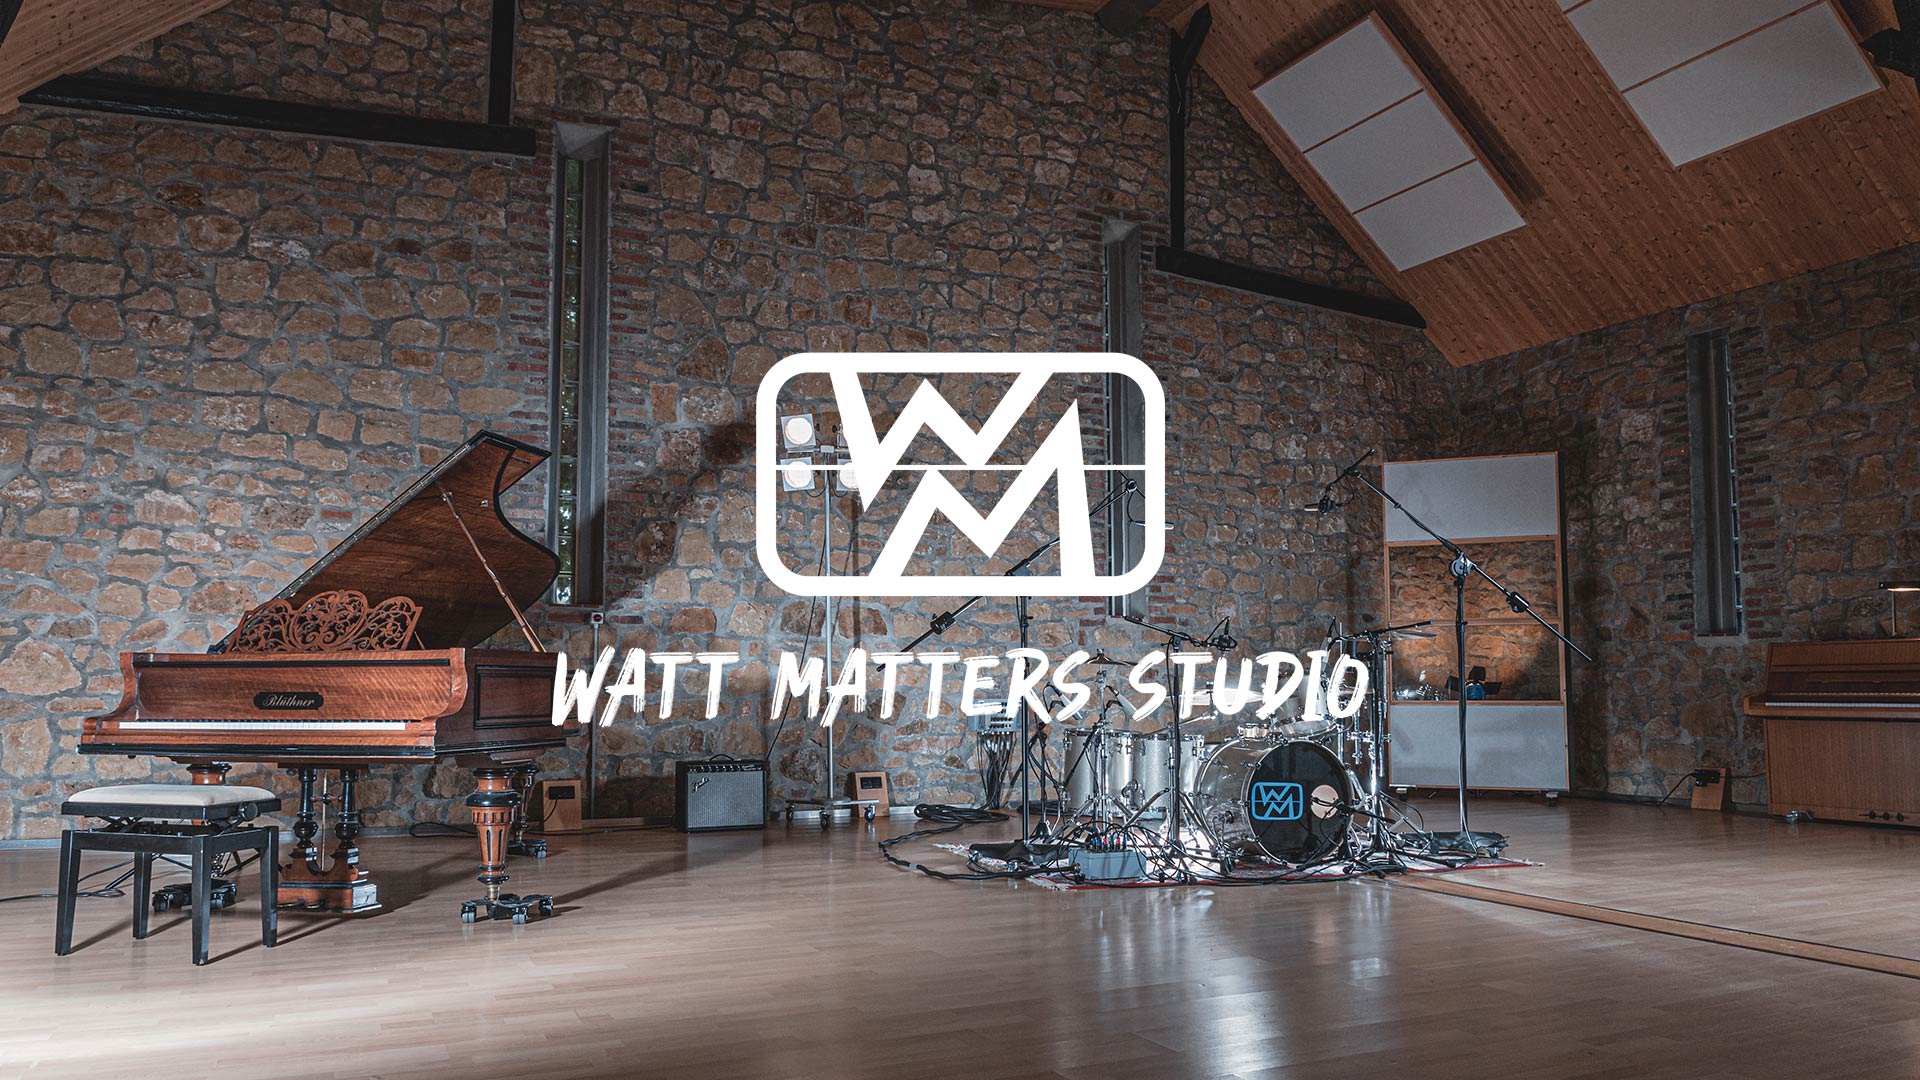 (c) Wattmattersstudio.com